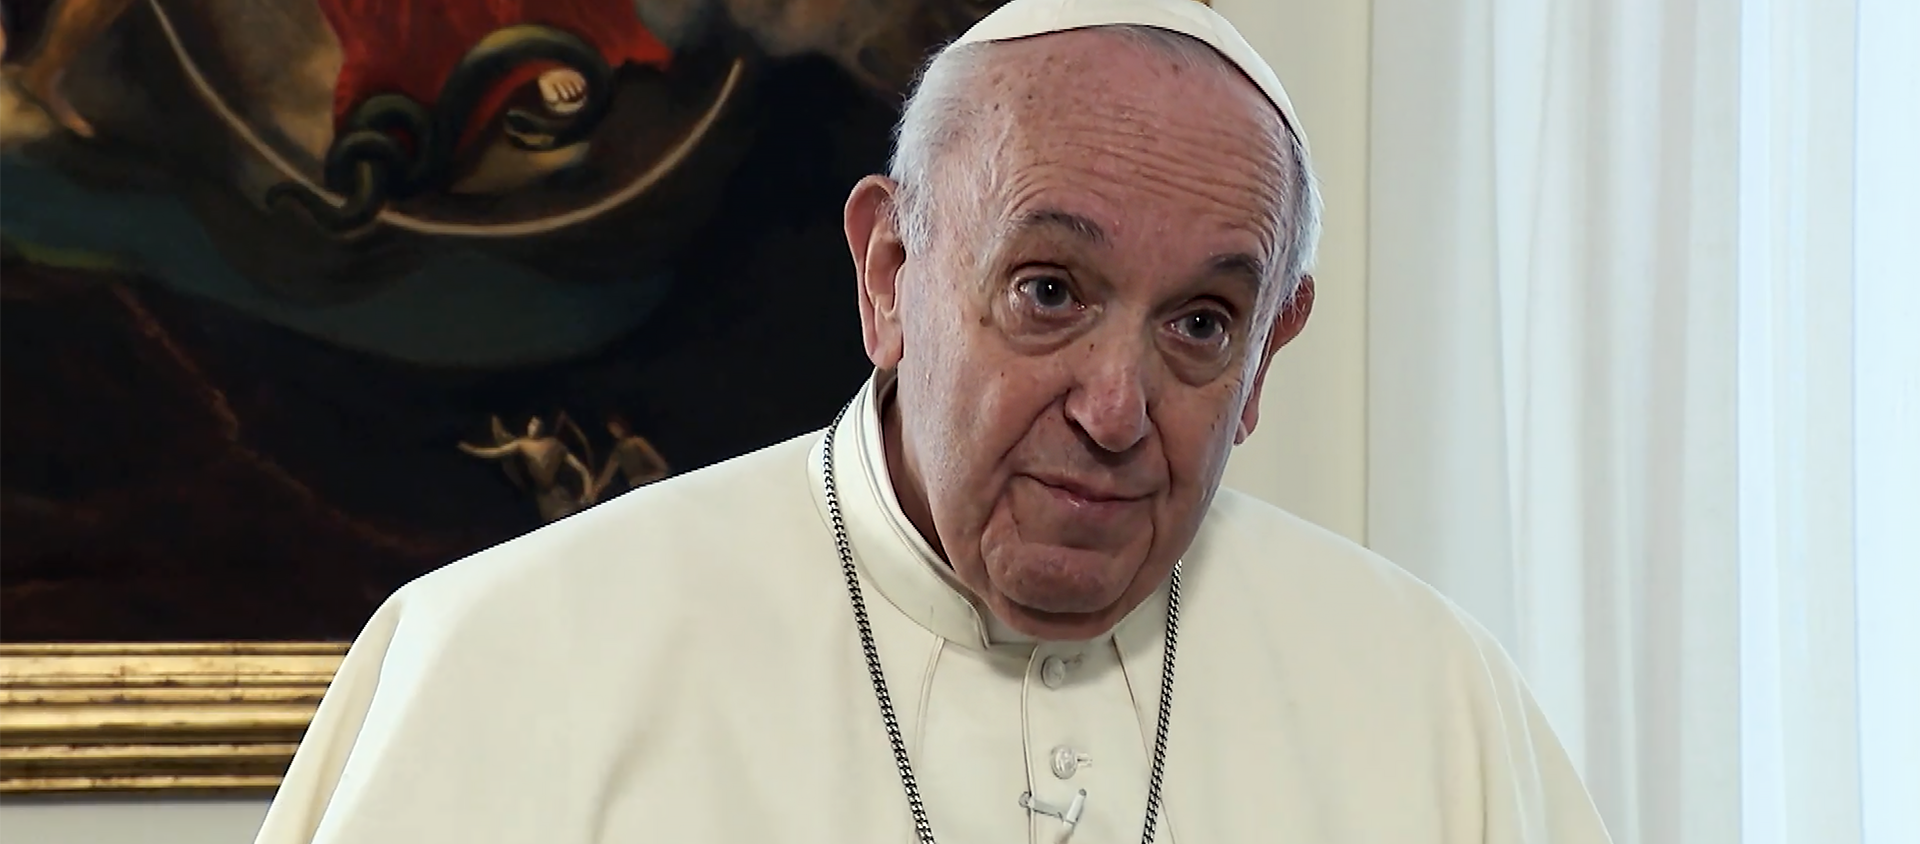 Le pape a exprimé sa proximité aux familles des 46 personnes - dont 12 mineurs -  qui ont péri dans l'incendie de leur bus | Vatican Media